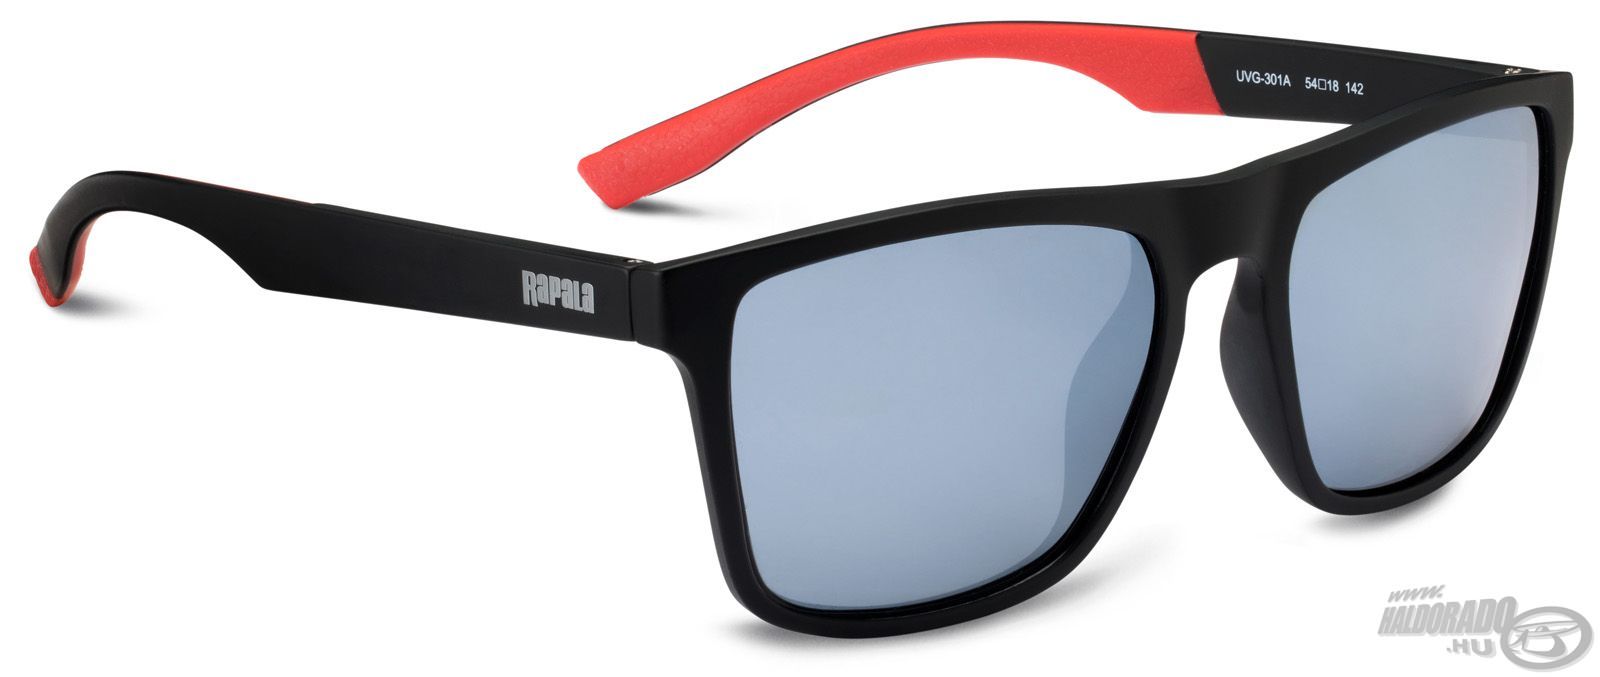 A Sportsman’s UVG-301A napszemüveg igazán divatos fekete kerettel, belül piros szárakkal illetve szürke színű tükörbevonatos lencsével készül